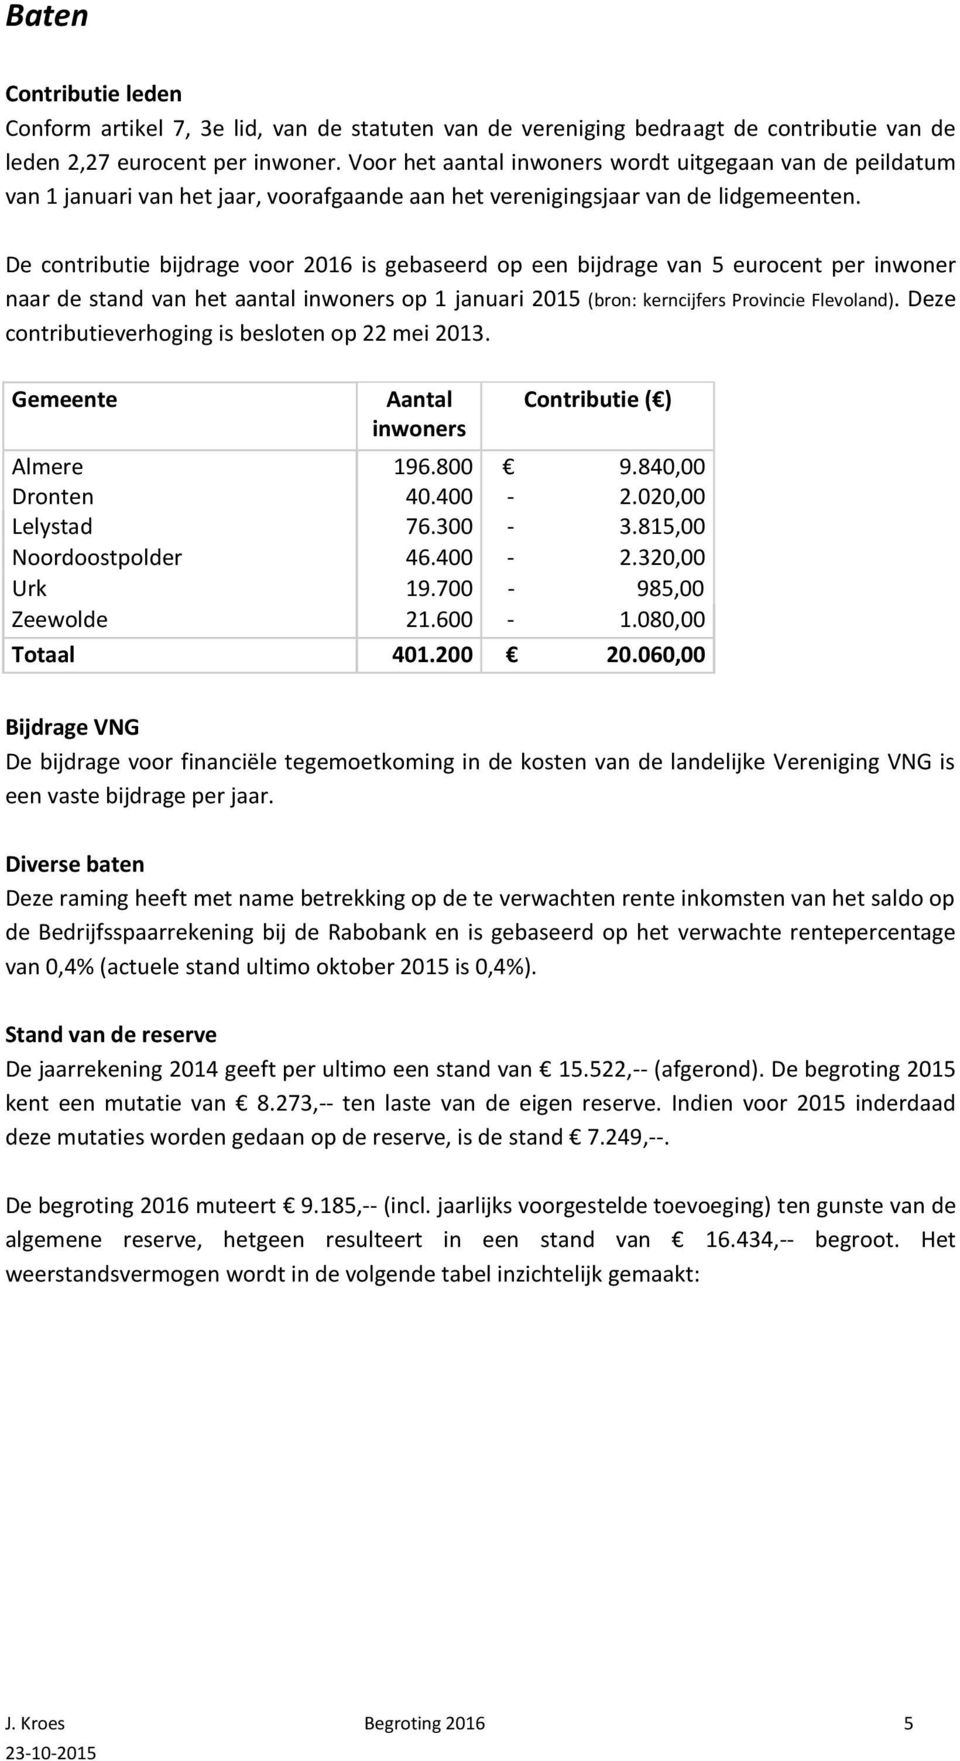 De contributie bijdrage voor 2016 is gebaseerd op een bijdrage van 5 eurocent per inwoner naar de stand van het aantal inwoners op 1 januari 2015 (bron: kerncijfers Provincie Flevoland).